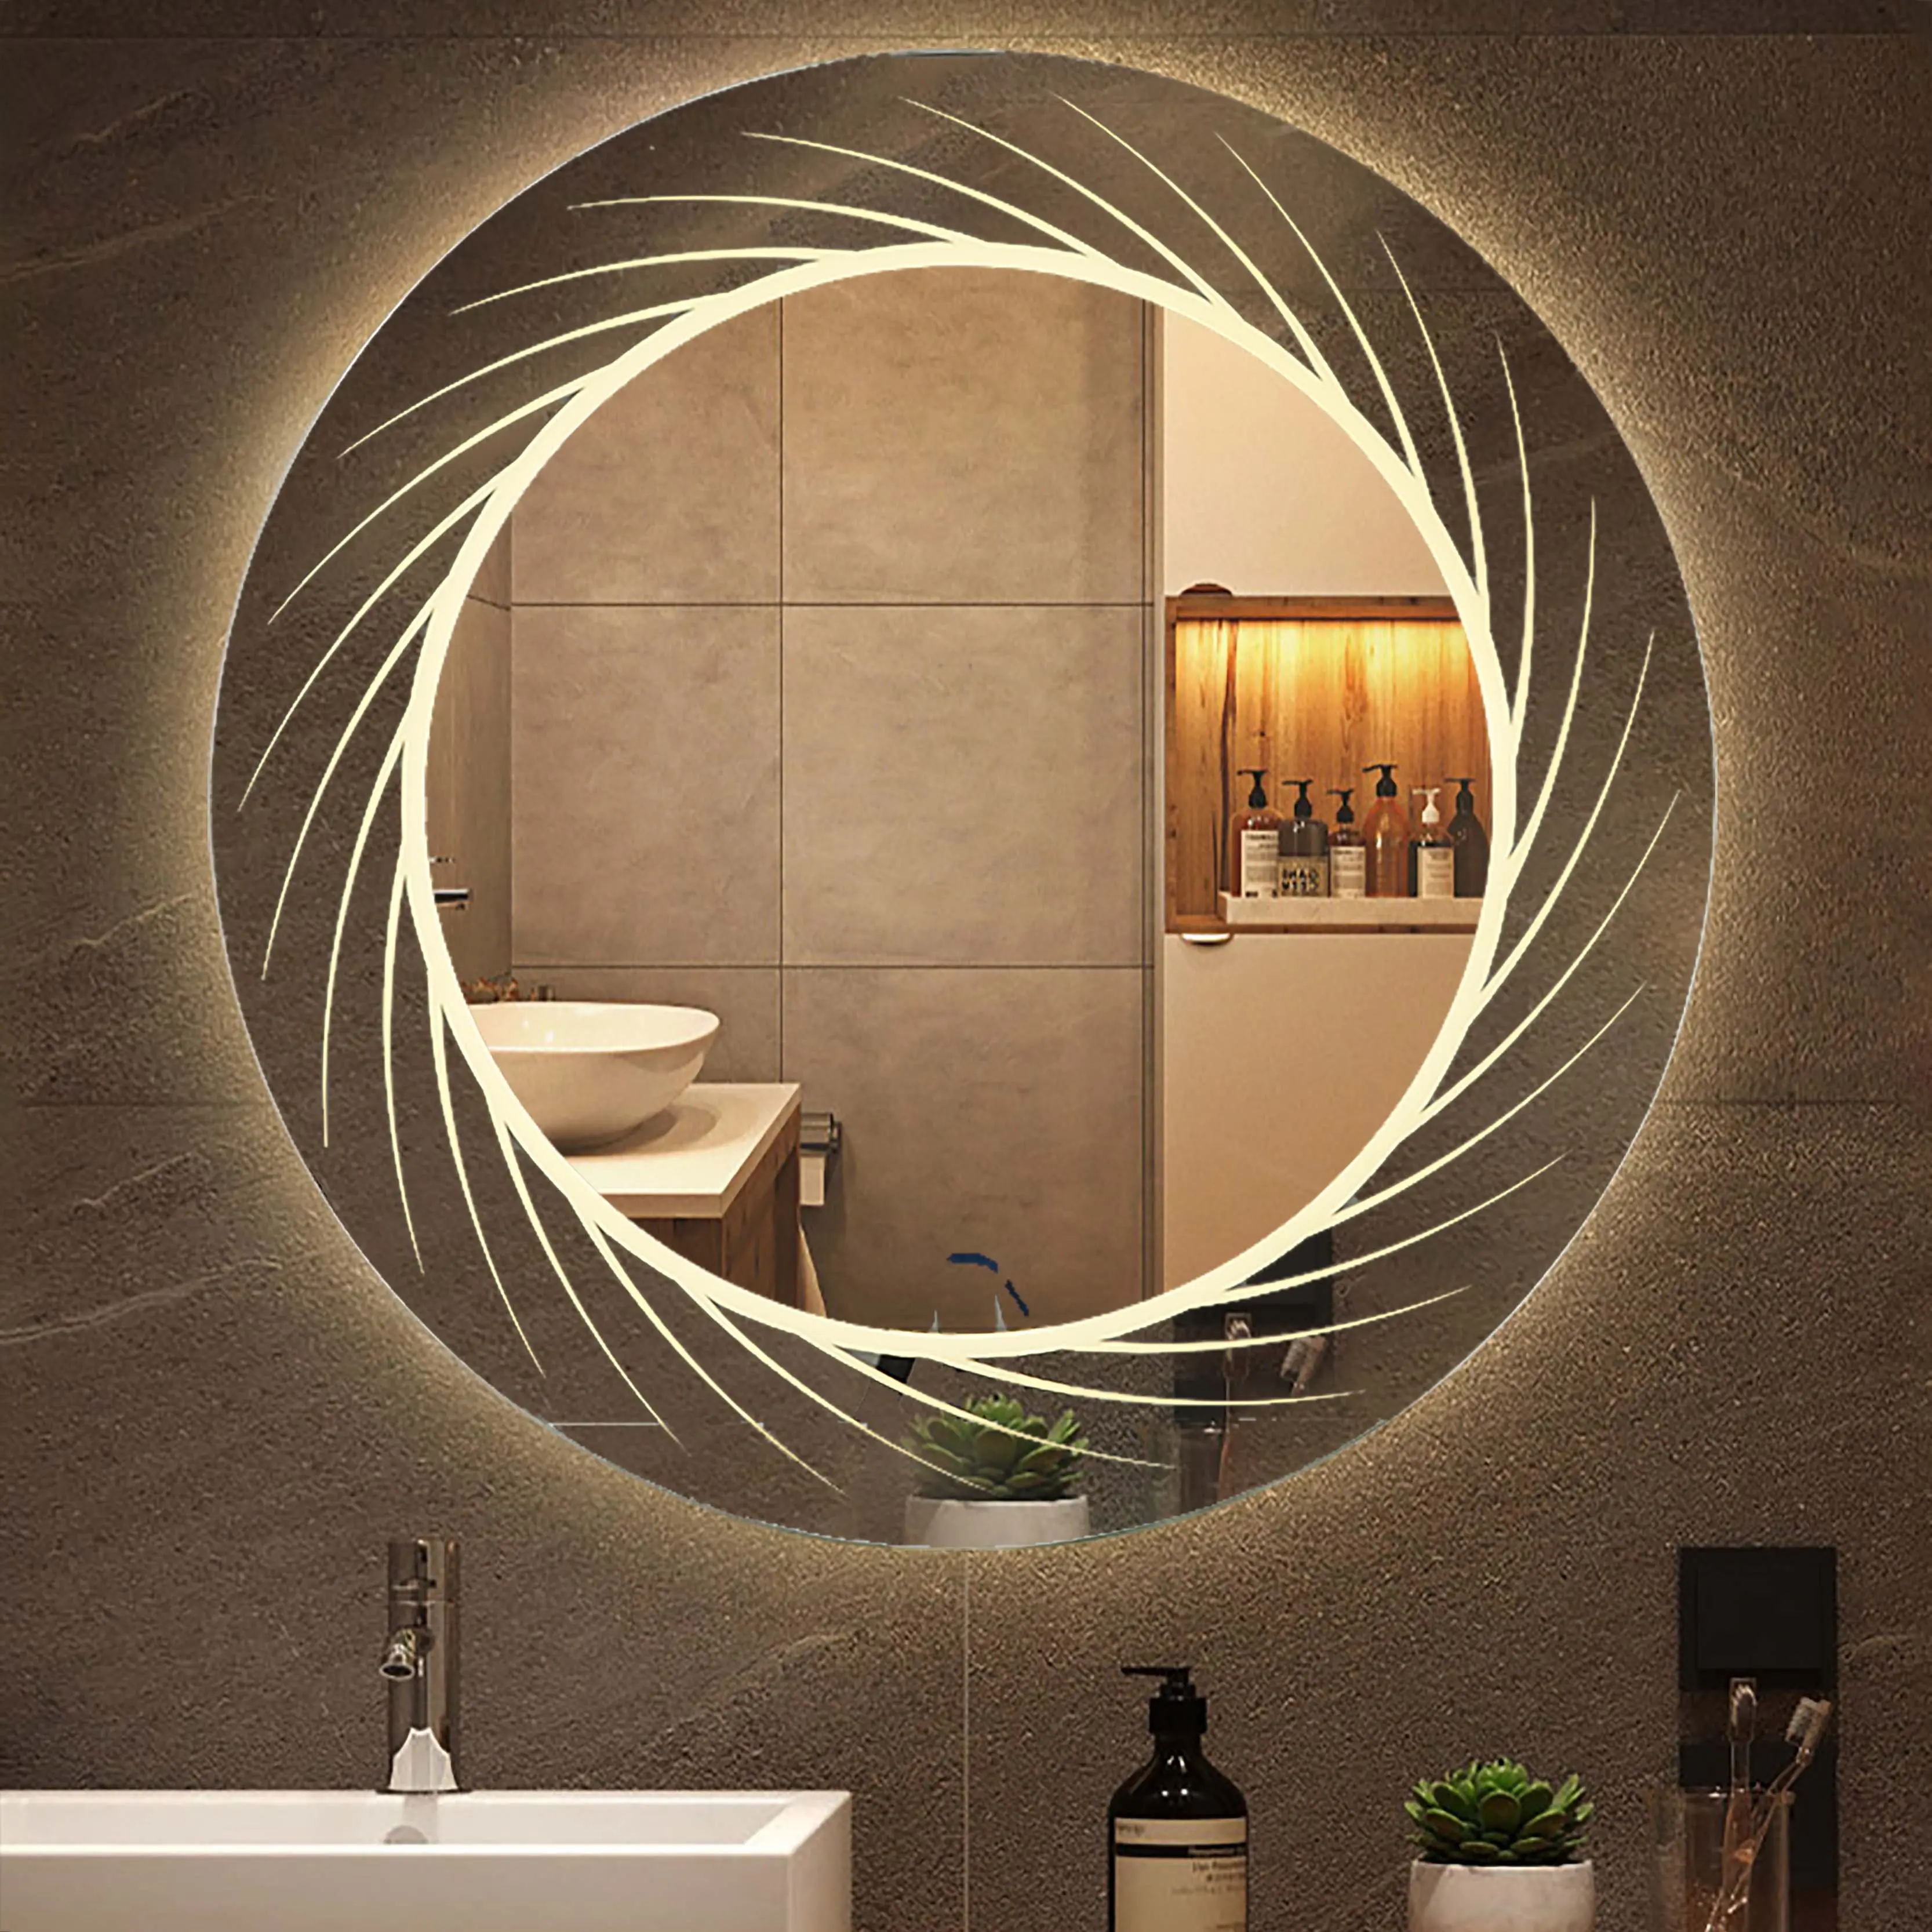 Новый продукт, бытовая техника, Высококачественная светодиодная подсветка, круглое зеркало для ванной комнаты